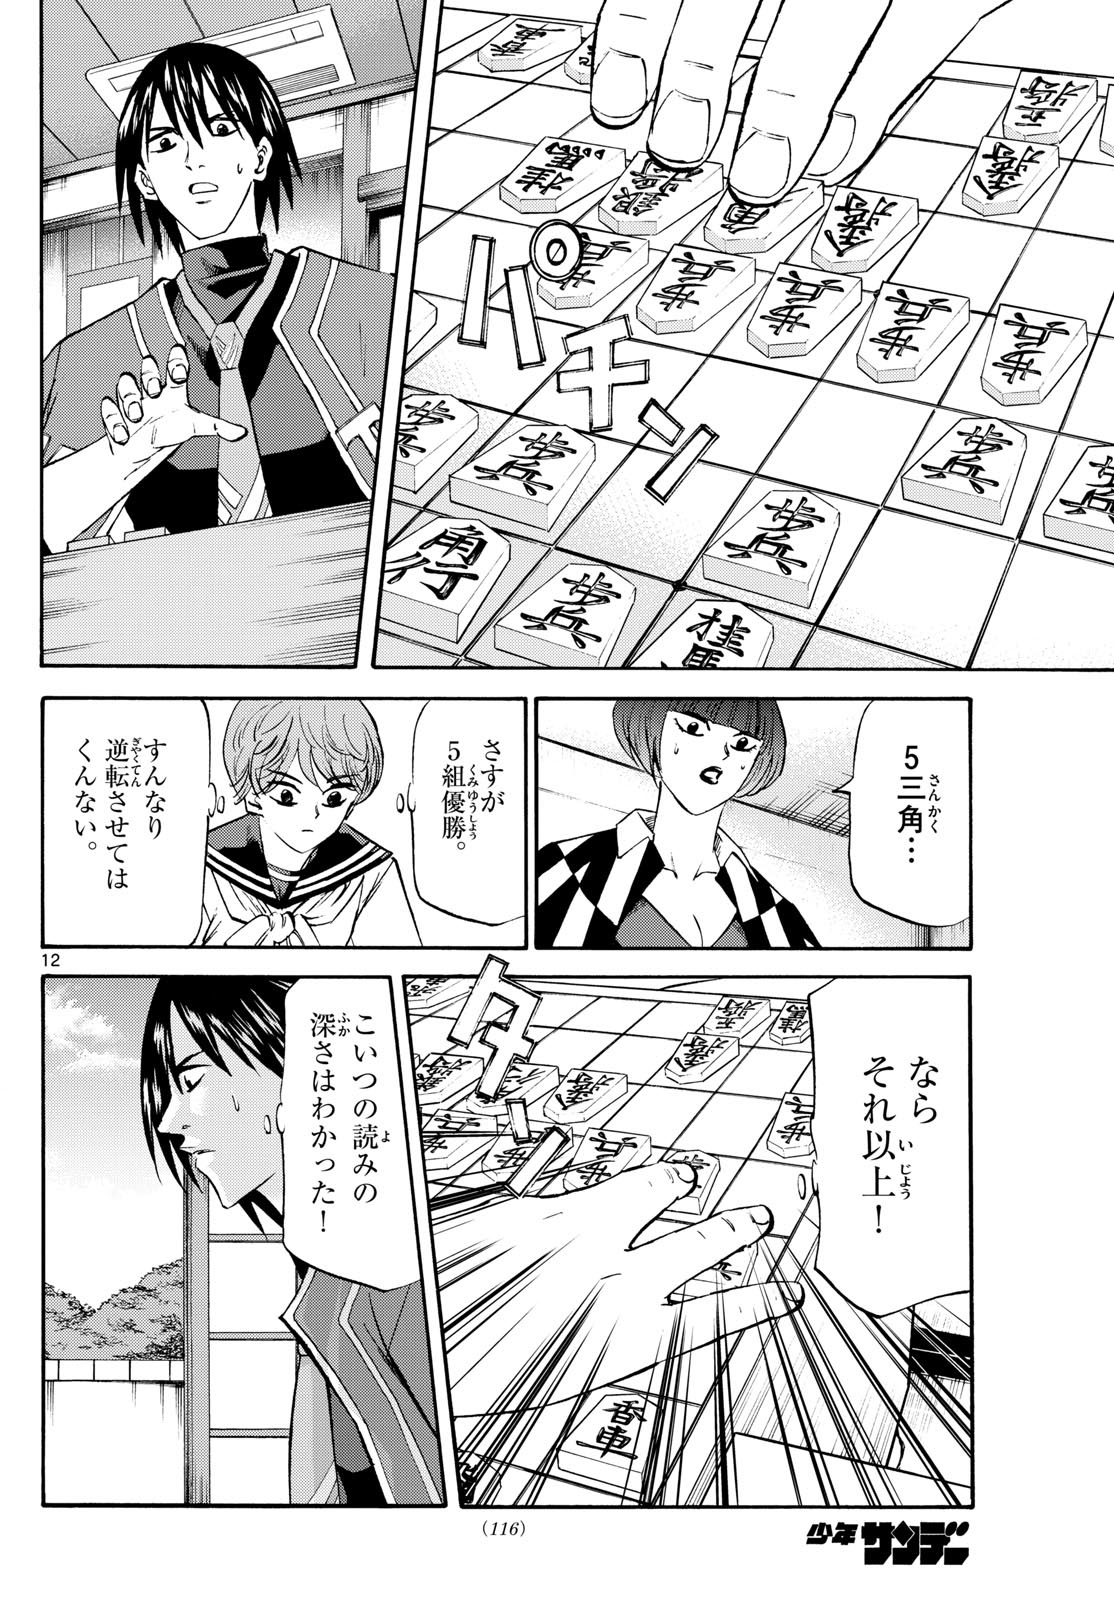 Tatsu to Ichigo - Chapter 198 - Page 12